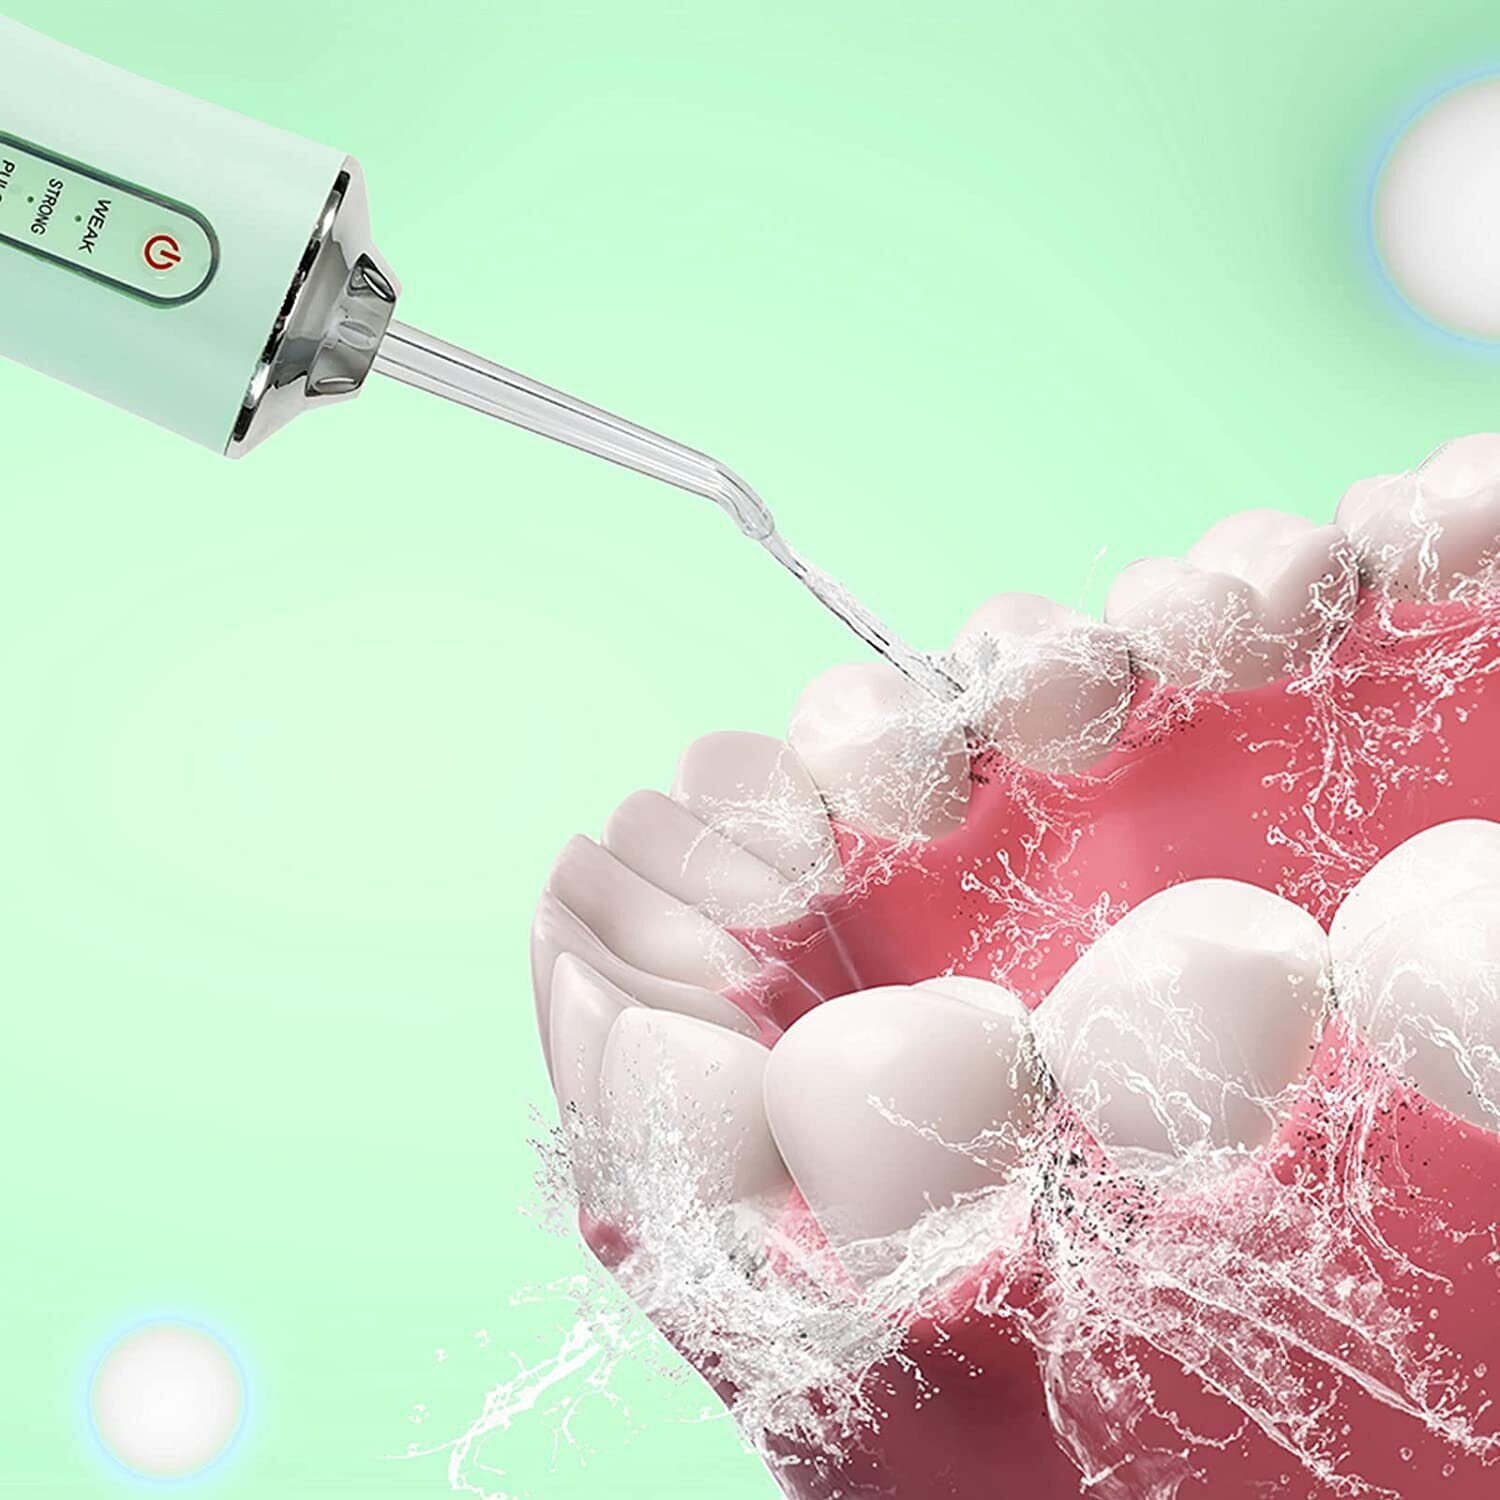 دستگاه واتر جت شست و شوی دهان و دندان کلیرپرو مدل PPS pulse -  - 5